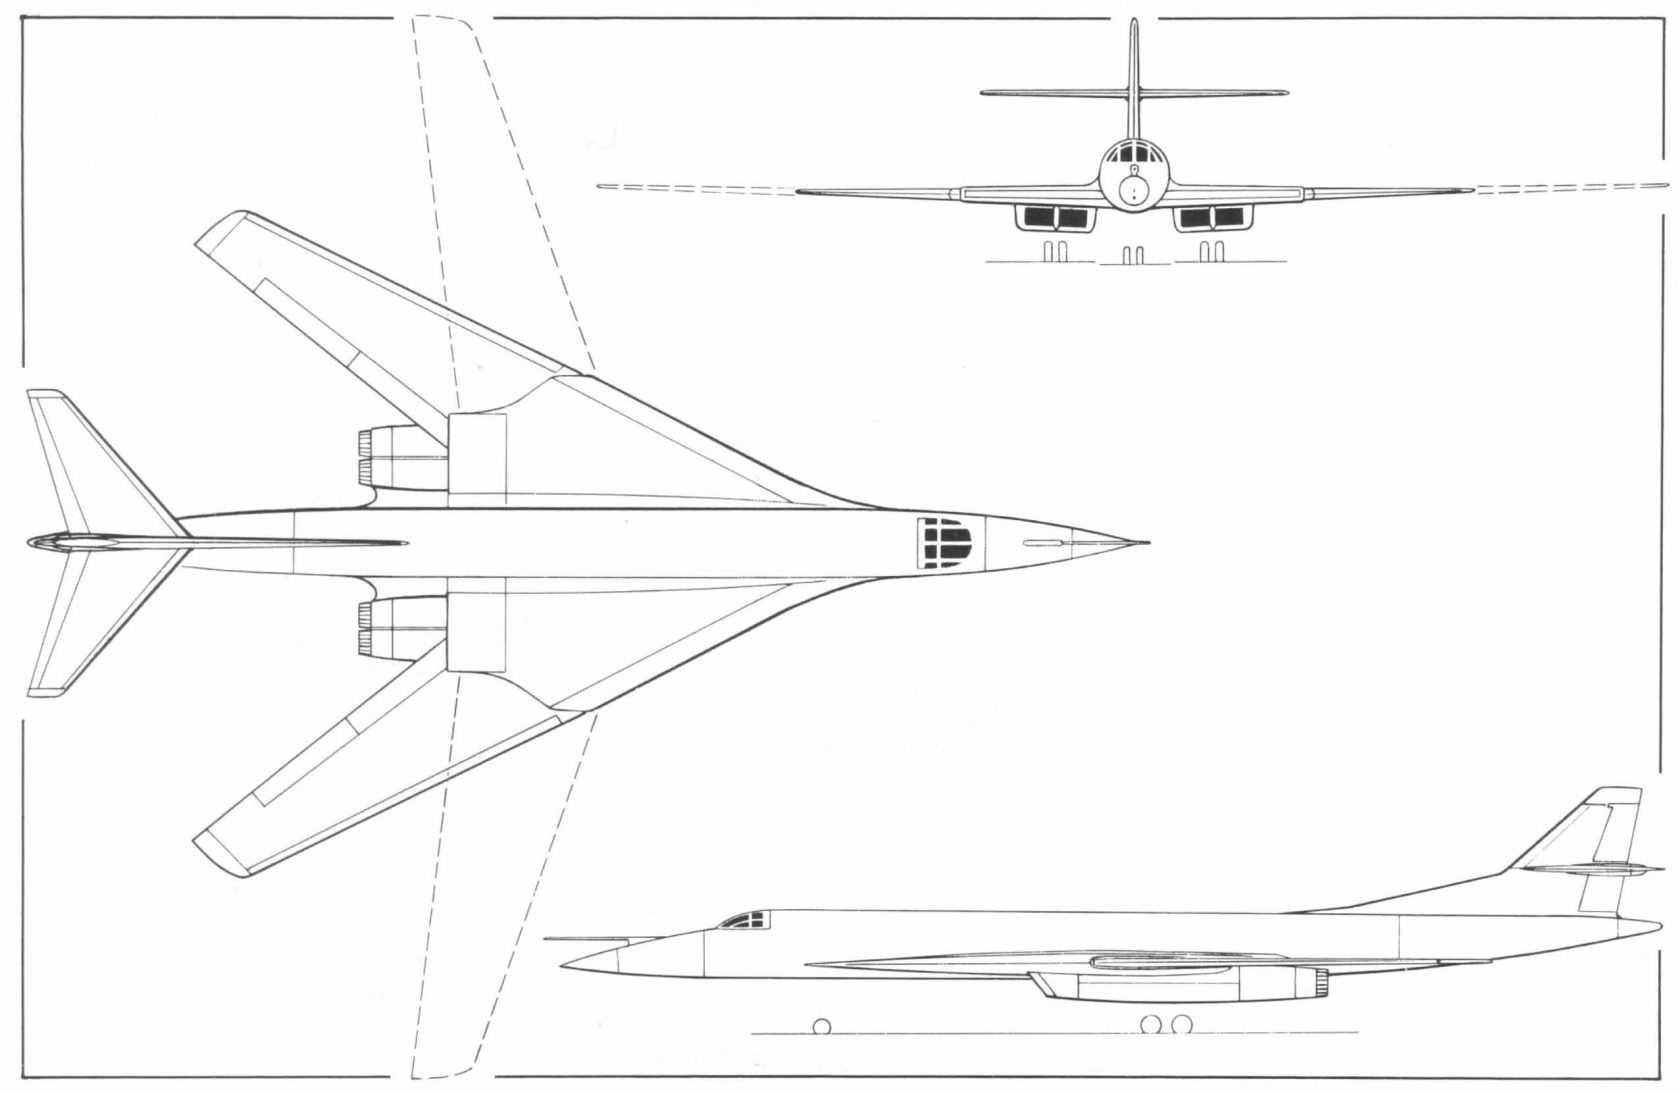 Опытные советские самолеты глазами запада. Тяжелый дальний бомбардировщик Tupolev Tu-? Blackjack (Ту-160)